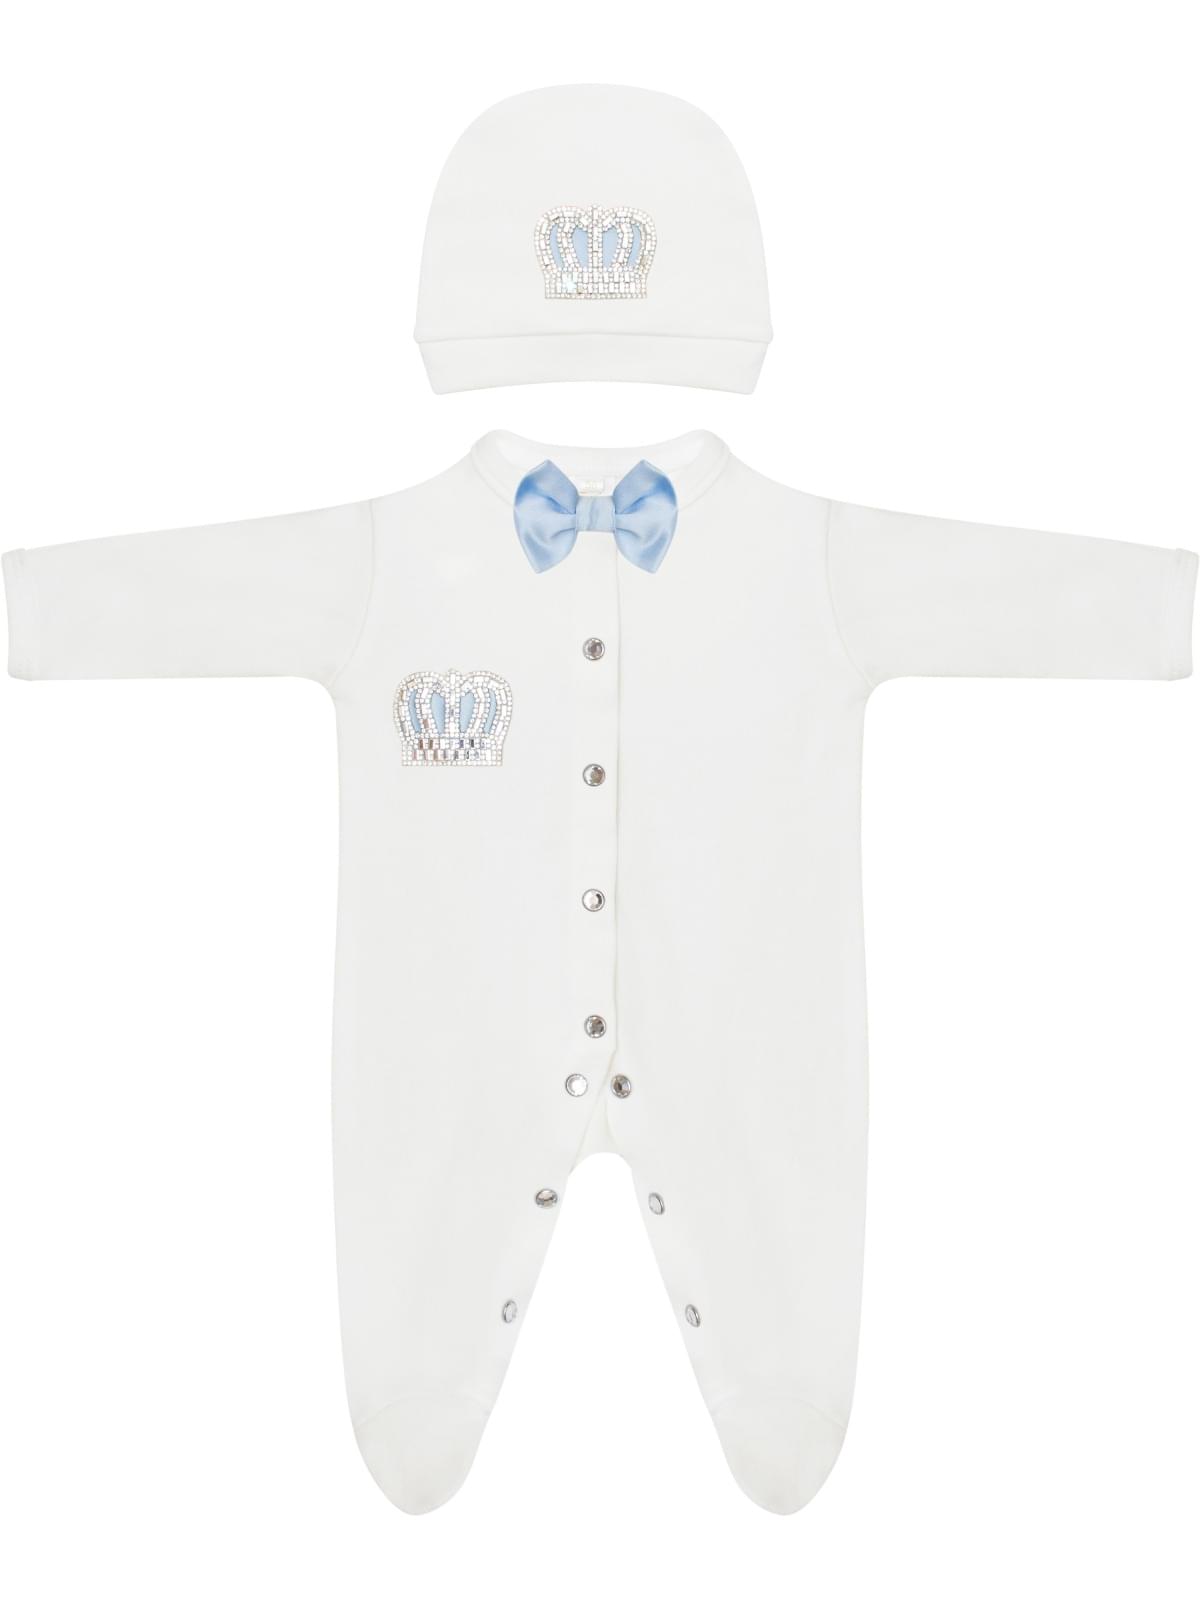 Комплект на выпискудетский детский Luxury Baby Корона, белый; голубой, 56